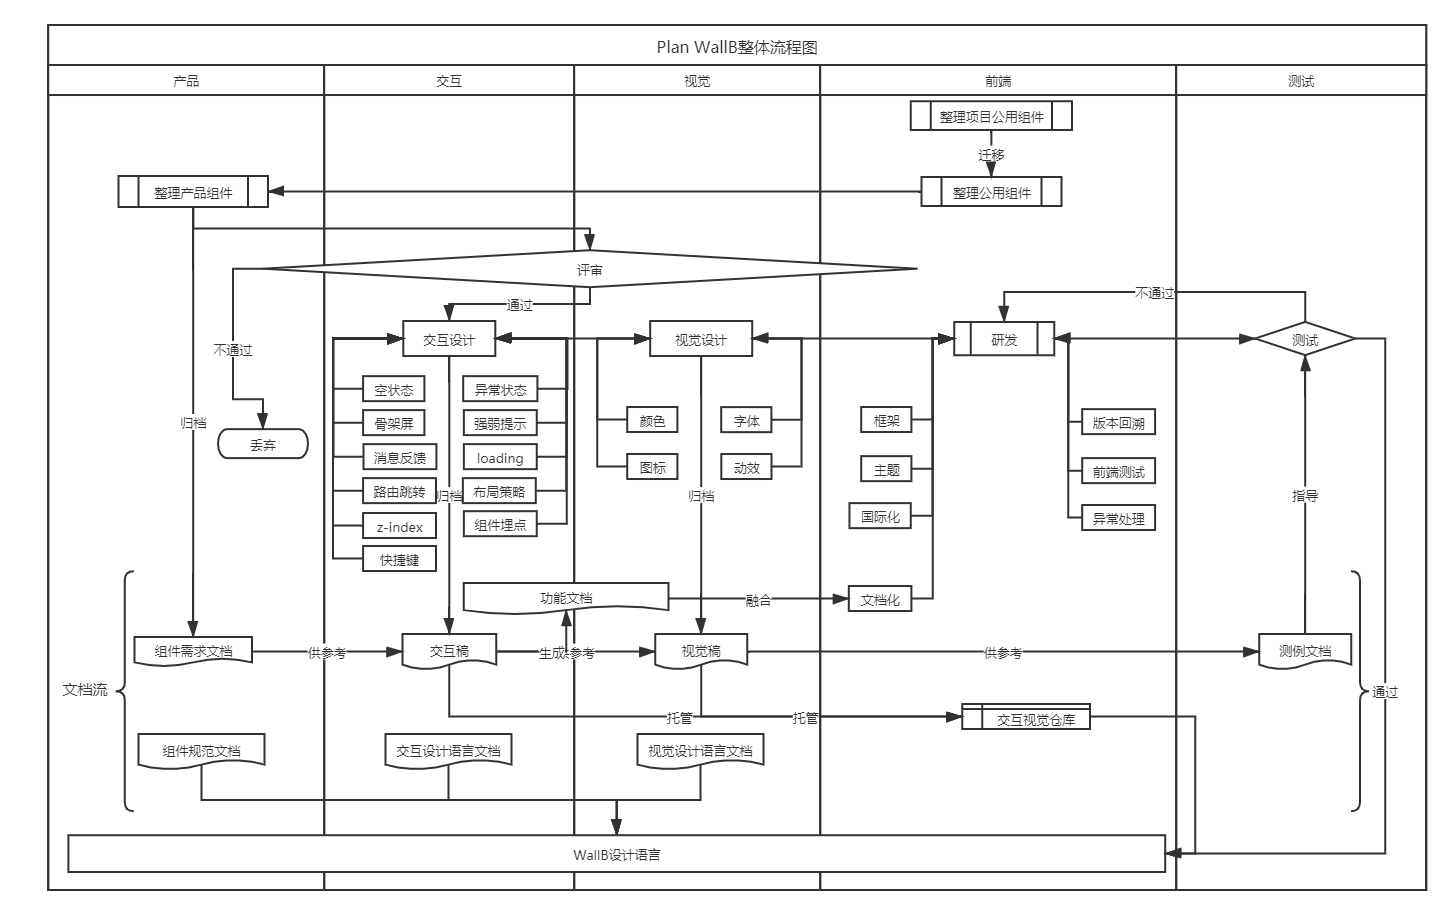 Plan WallB整体流程图.png